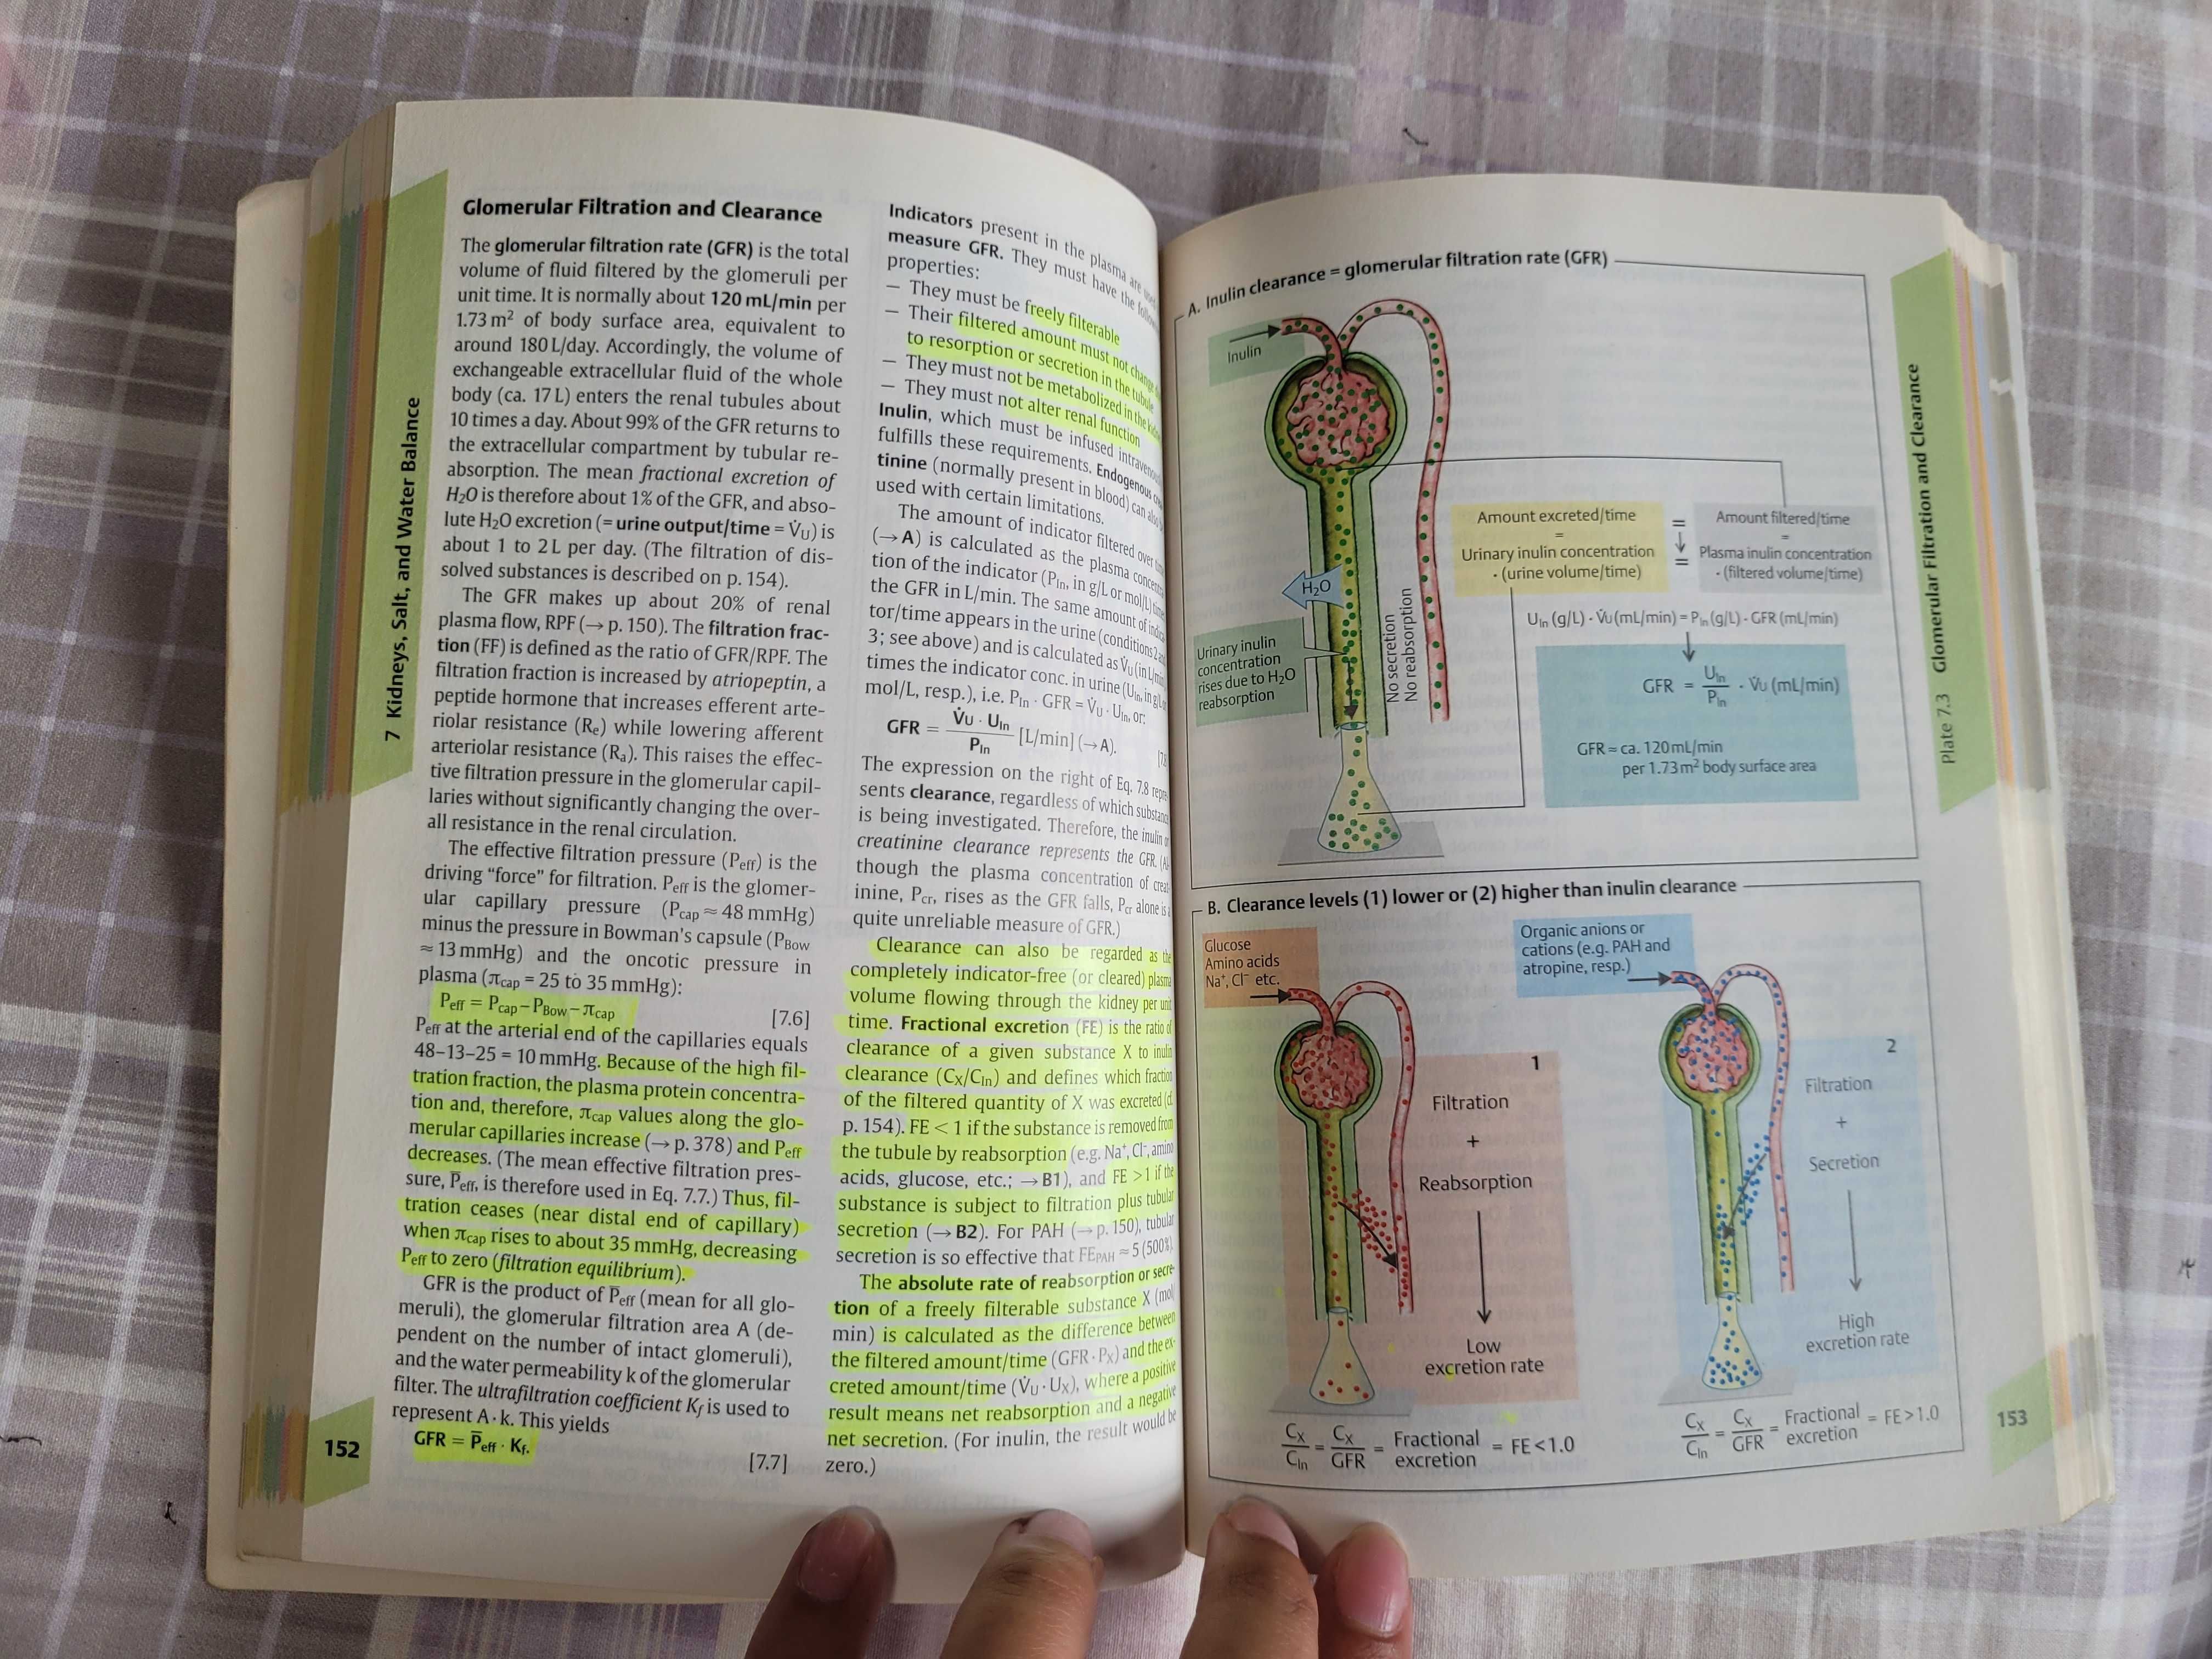 Livro Medicina "Color Atlas of Physiology" das colecções da Thieme